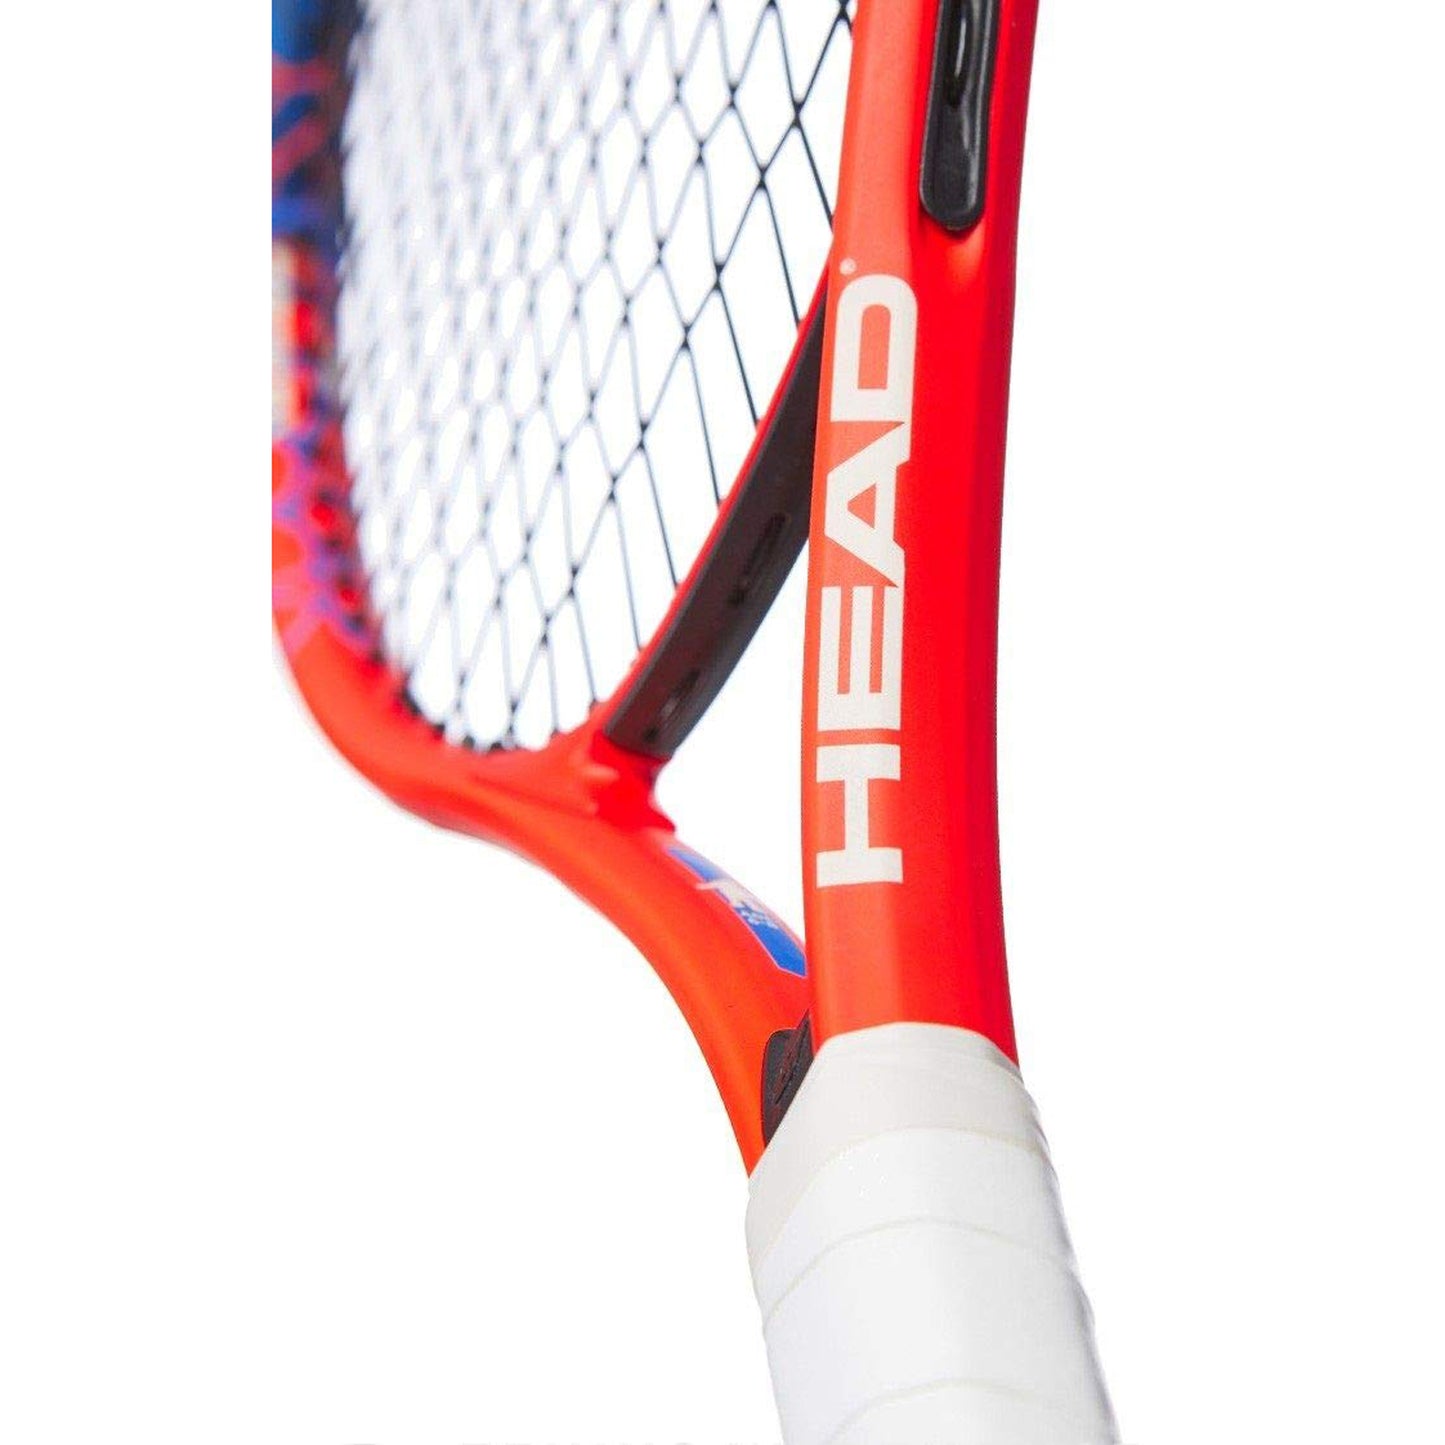 HEAD Radical 23 Strung Tennis Racquet for Juniors, 3/6-8 - Best Price online Prokicksports.com